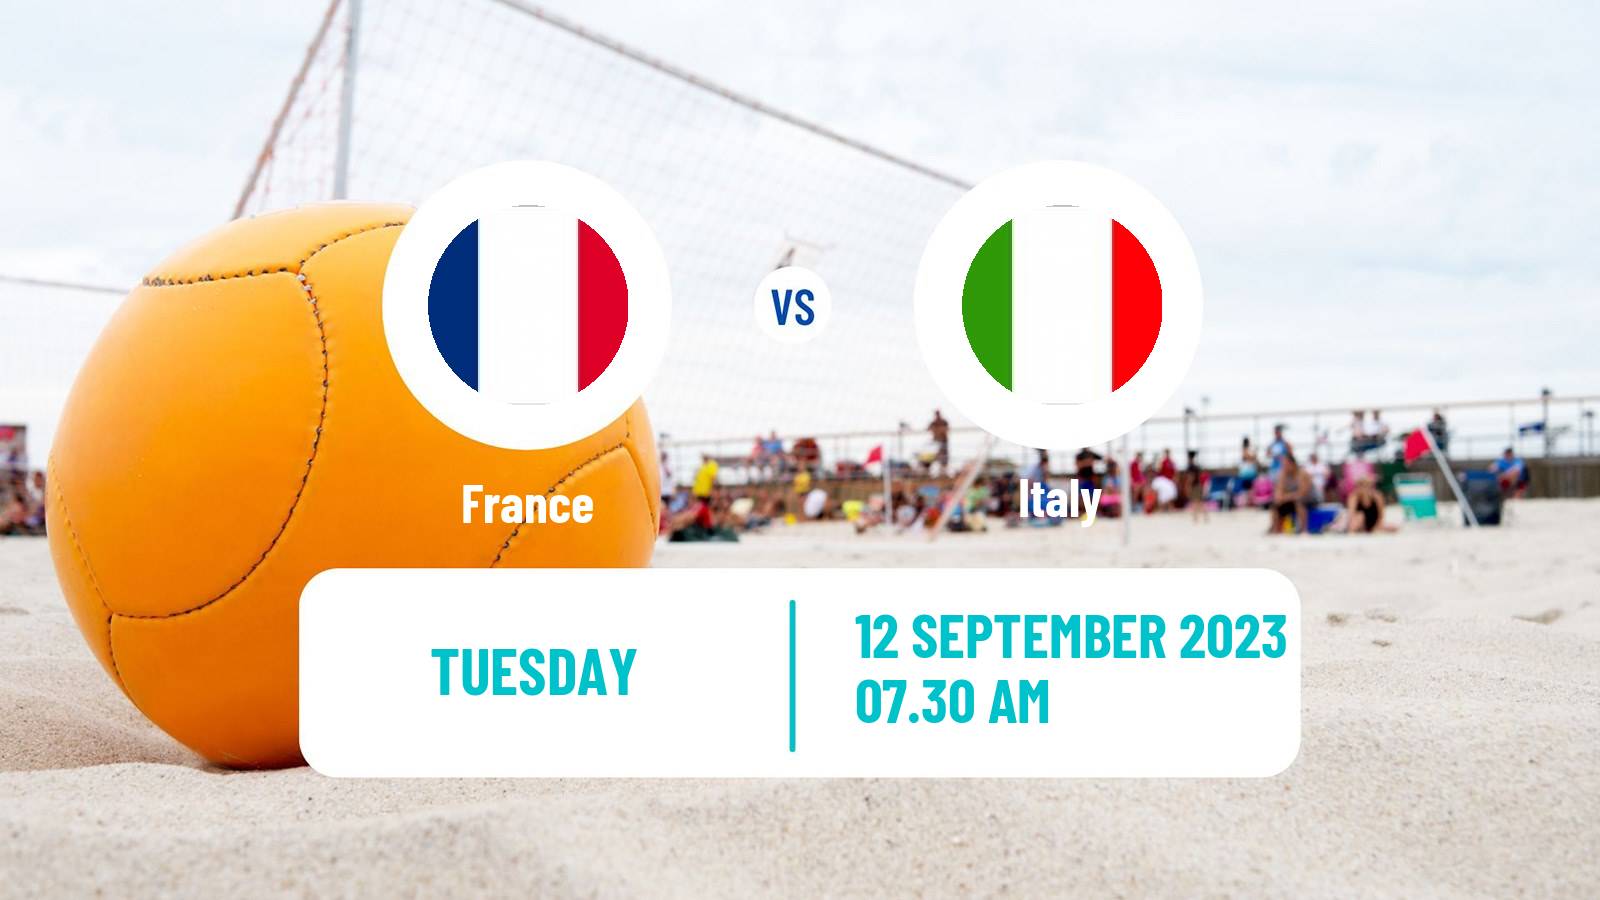 Beach soccer Mediterranean Beach Games France - Italy